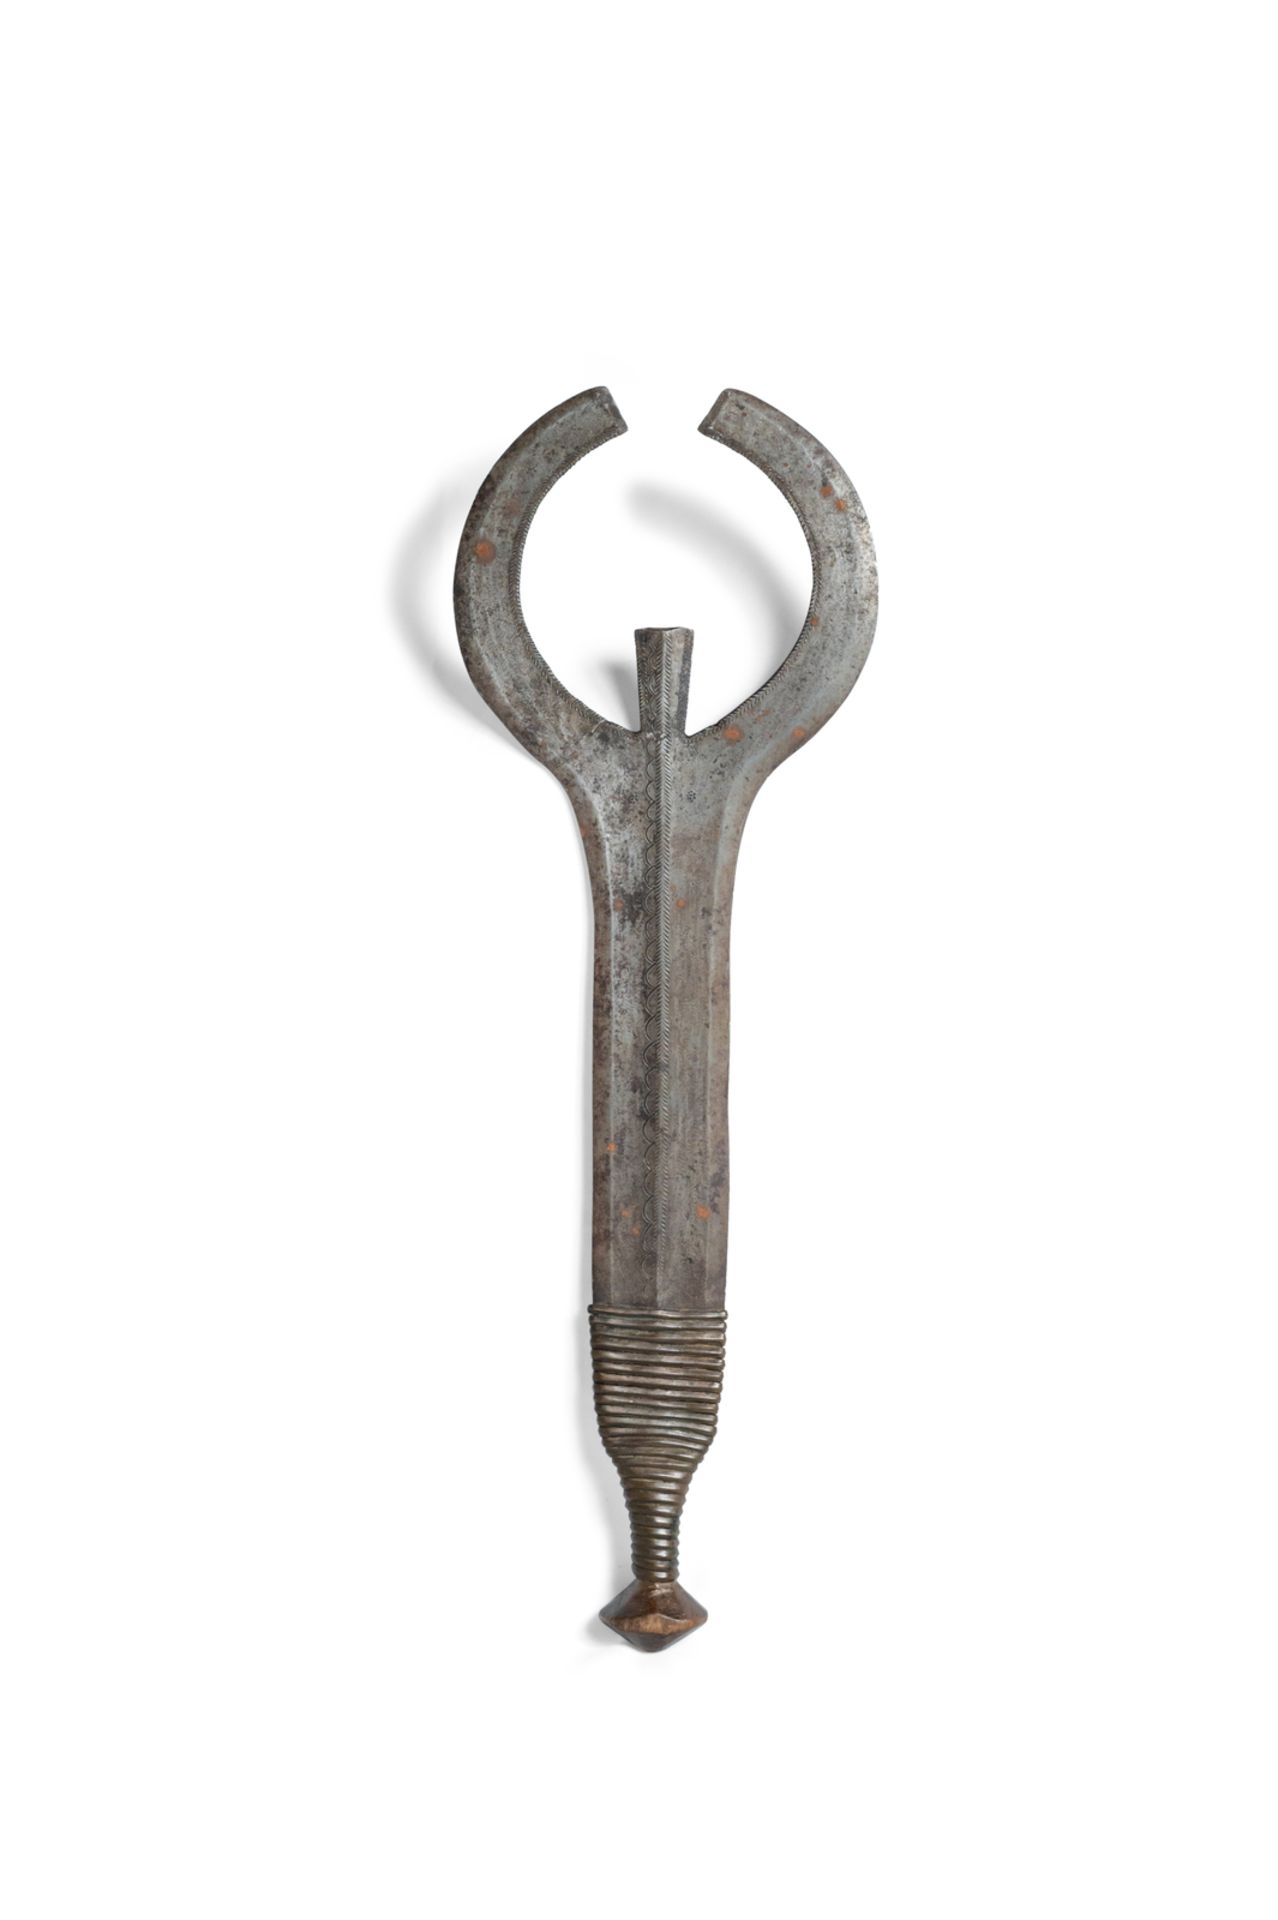 Ngulu bifacial sword. Democratic Republic of the Congo, late XIX century.